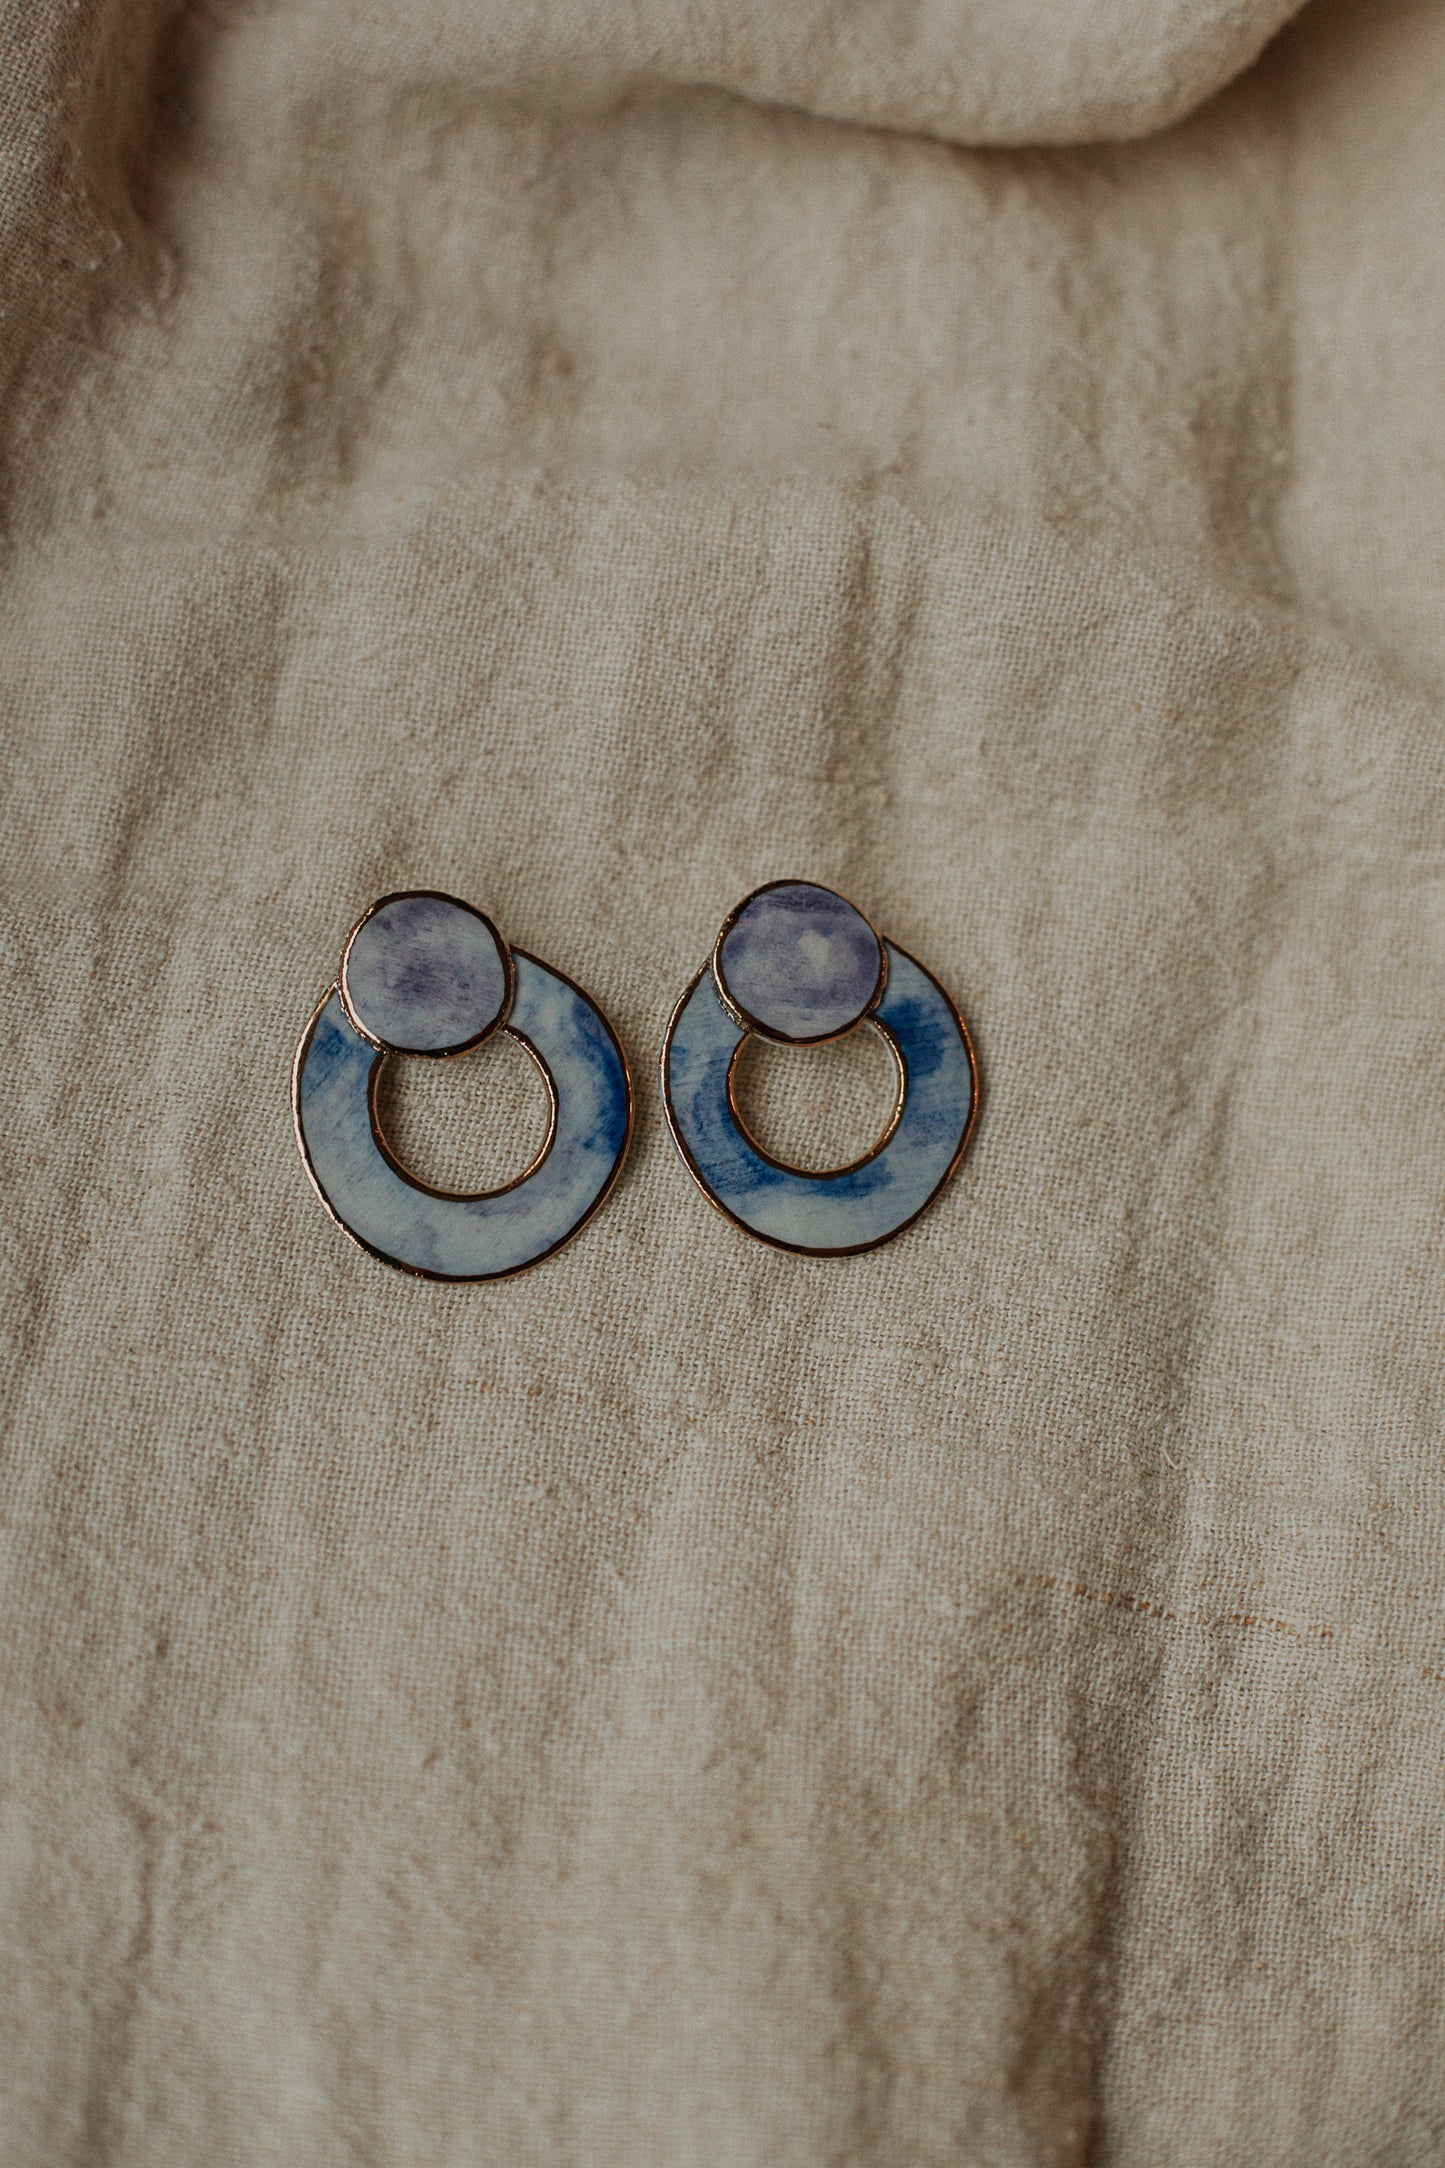 lilac loop de loop porcelain earrings